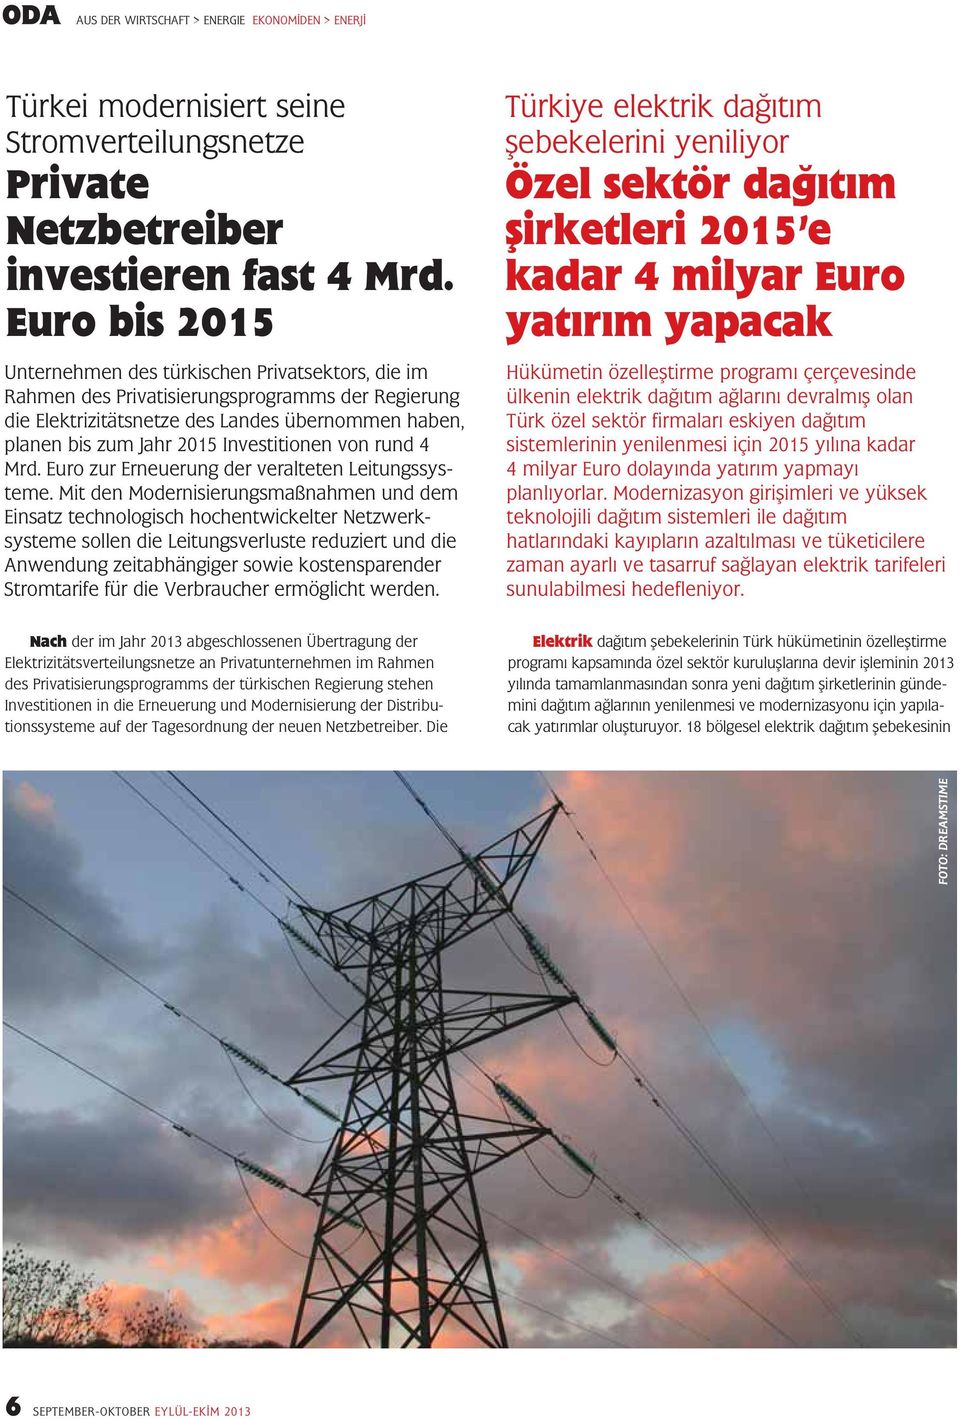 Investitionen von rund 4 Mrd. Euro zur Erneuerung der veralteten Leitungssysteme.